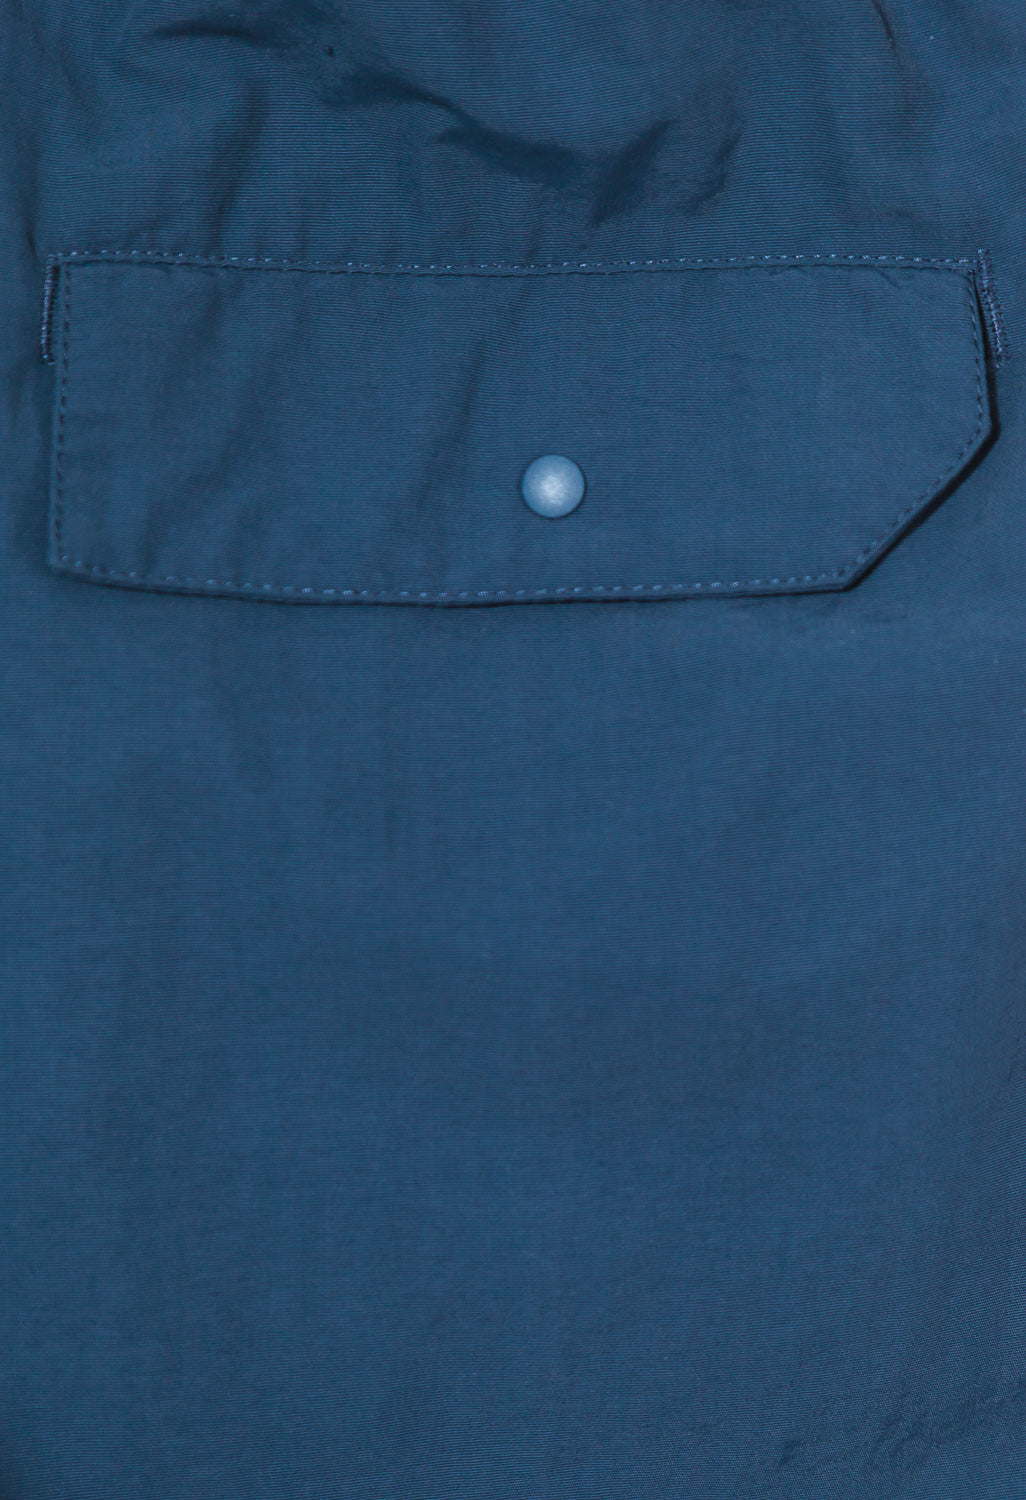 Patagonia Baggies Men's Shorts - Stone Blue